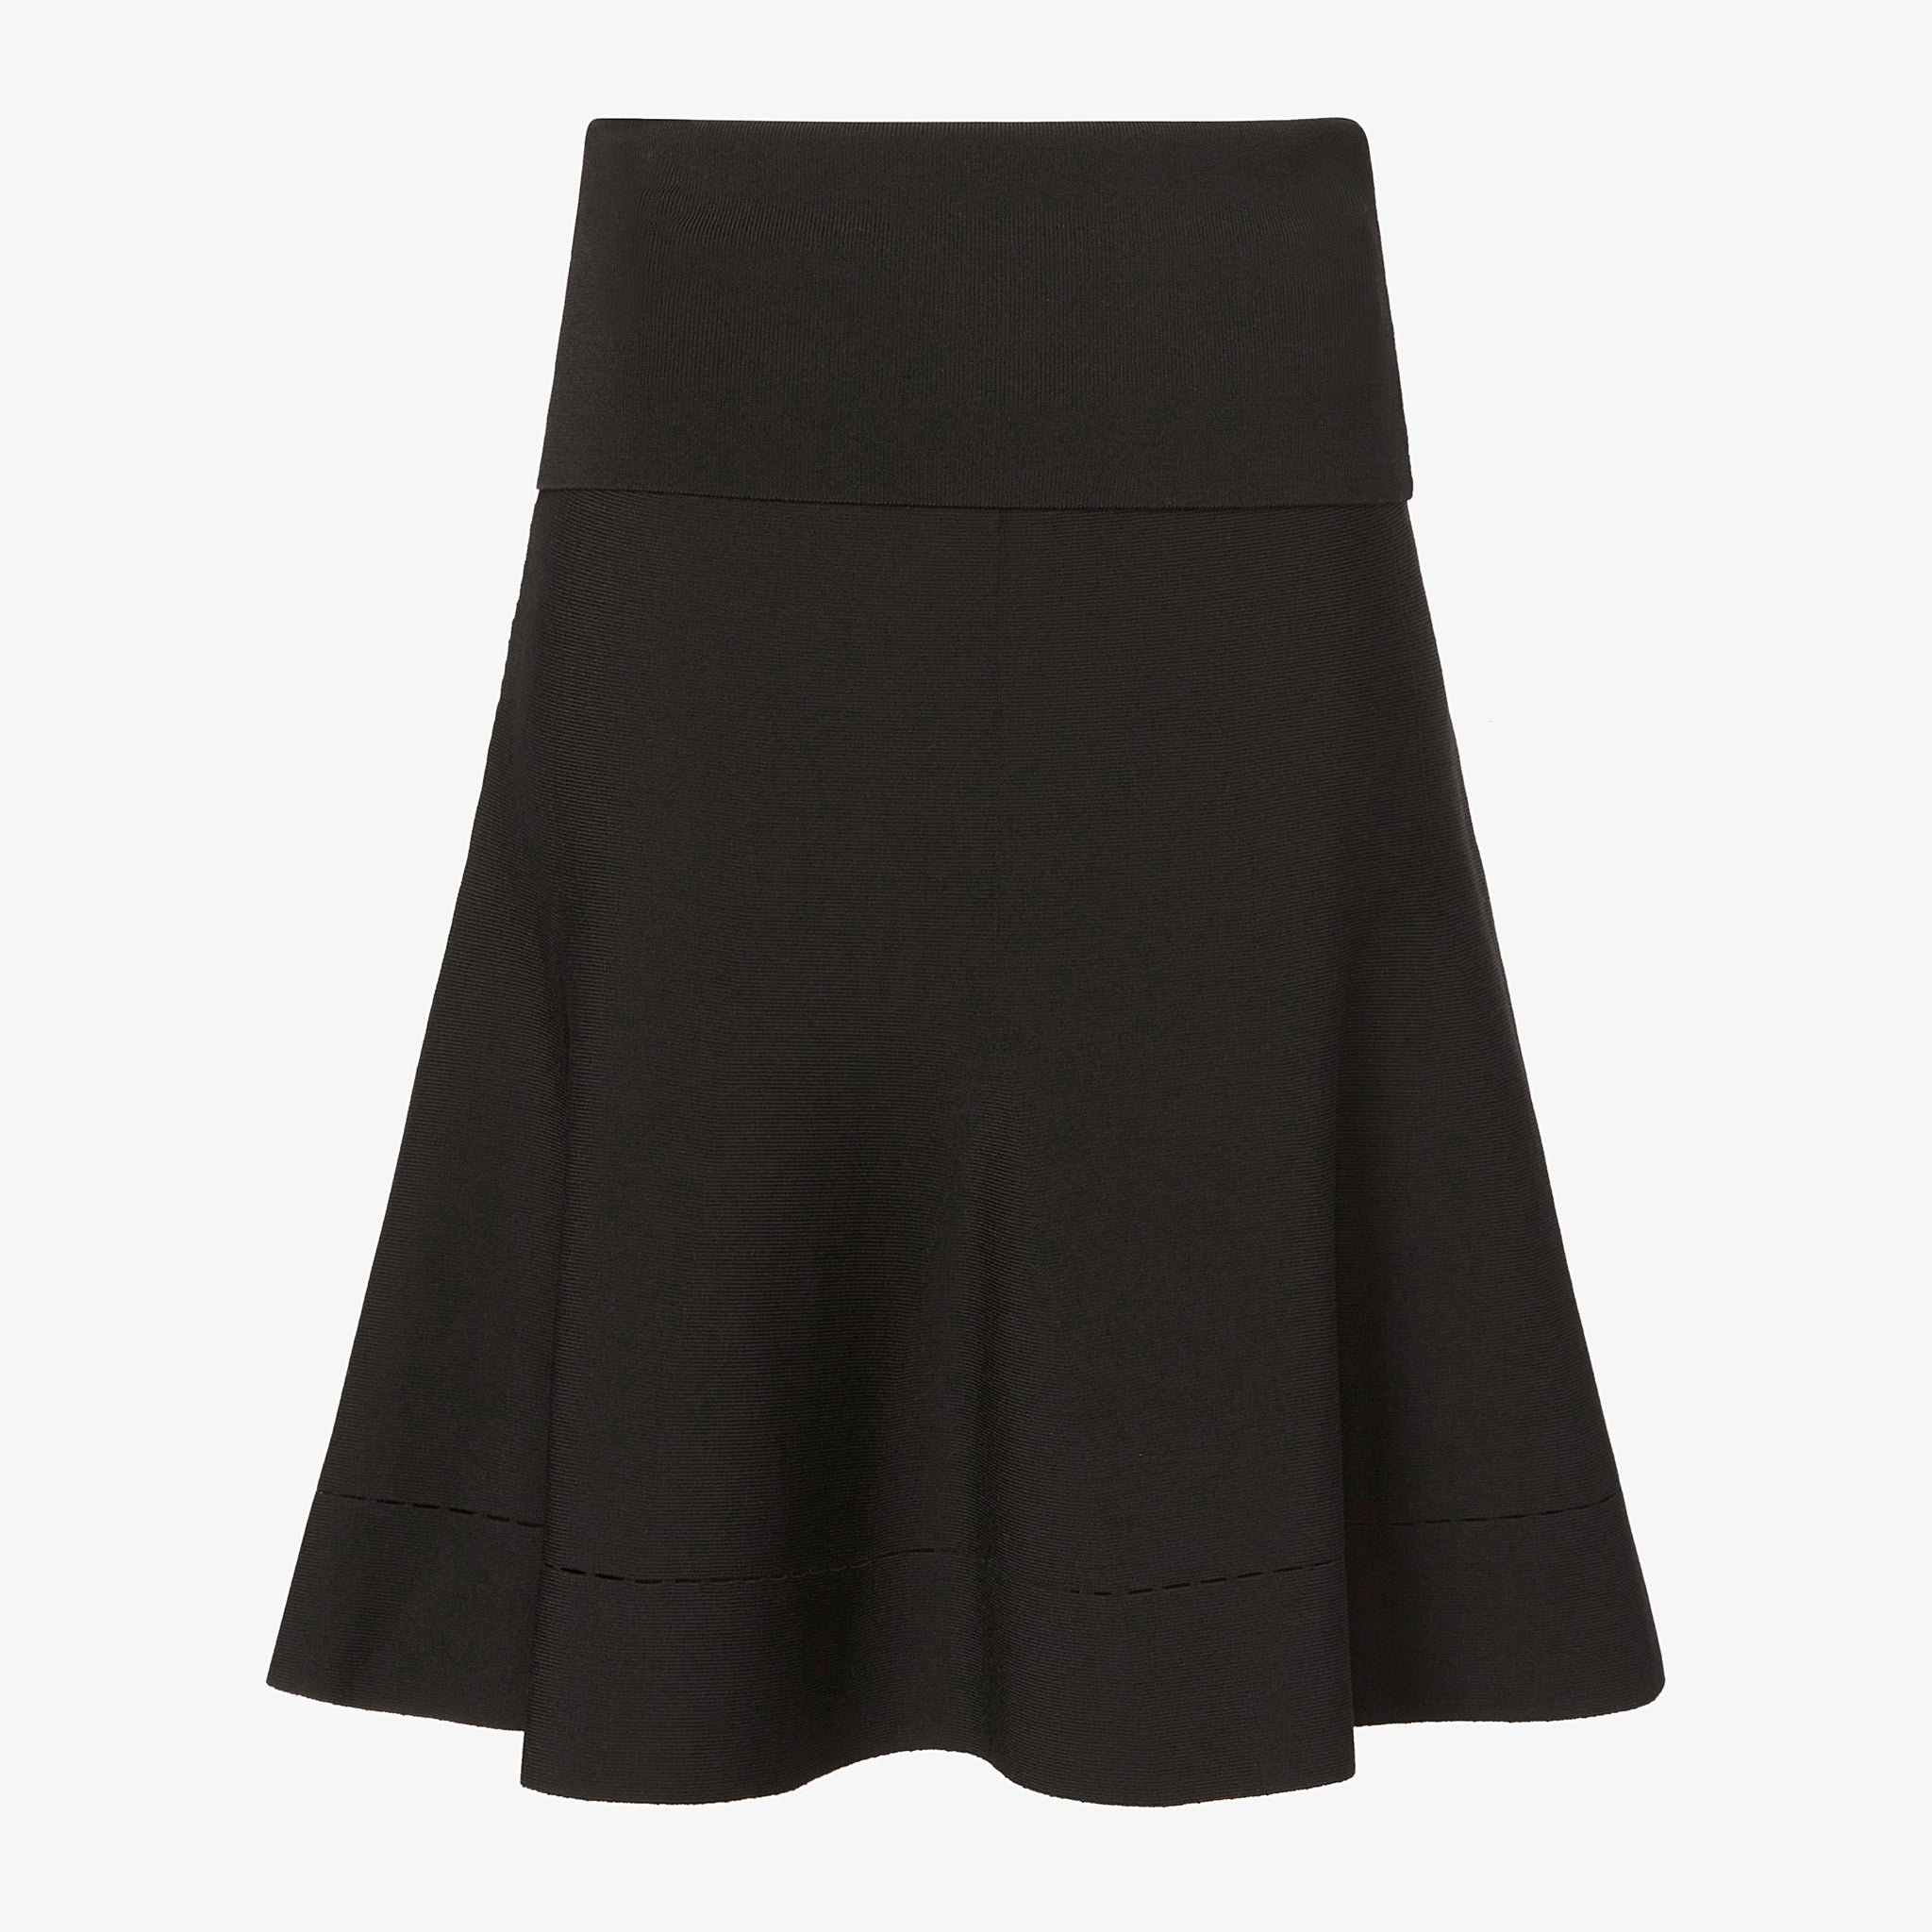 Packshot image of the luca skirt in black